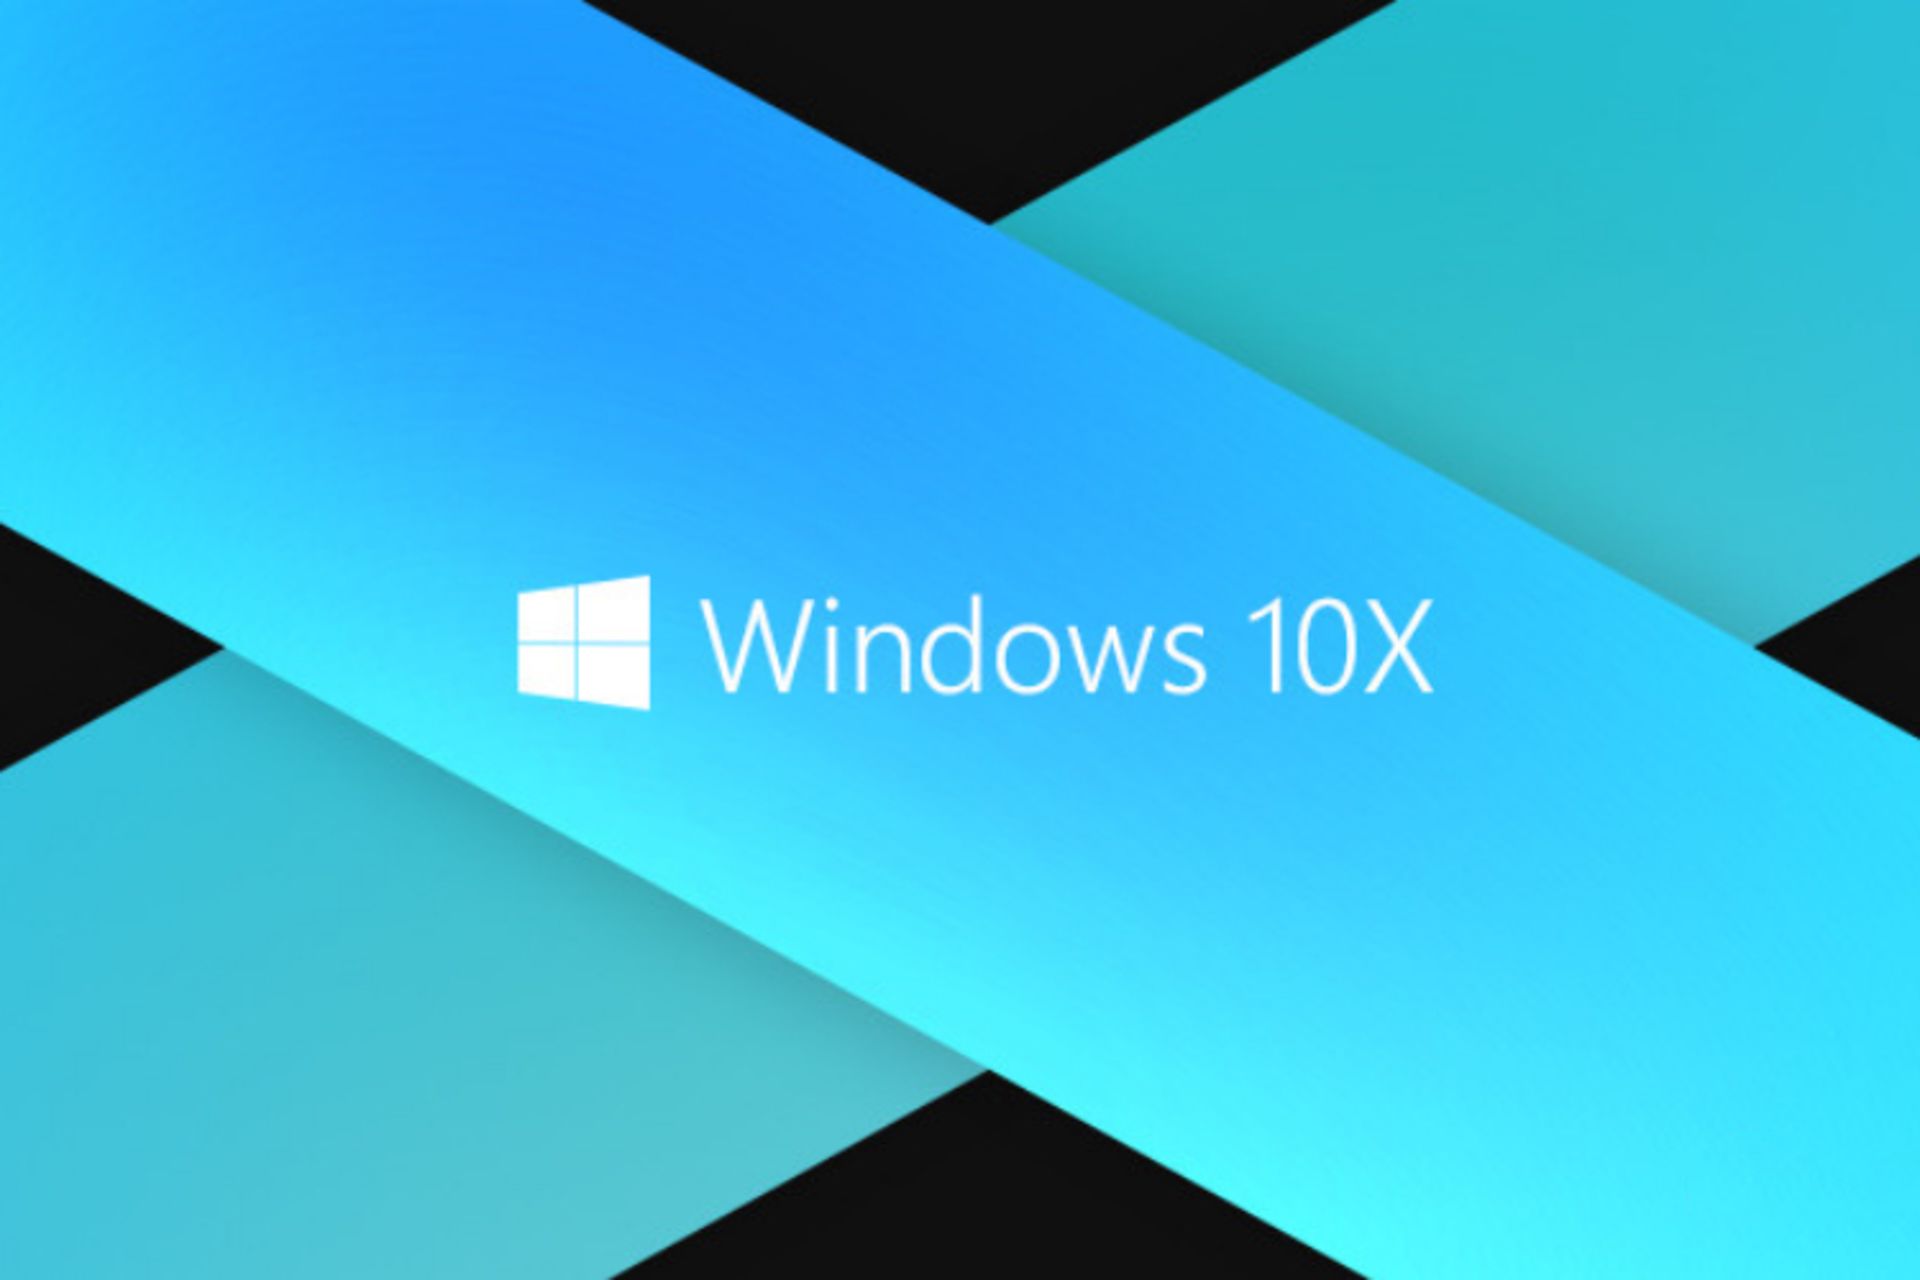 مرجع متخصصين ايران ويندوز 10 ايكس مايكروسافت / Microsoft Windows 10X